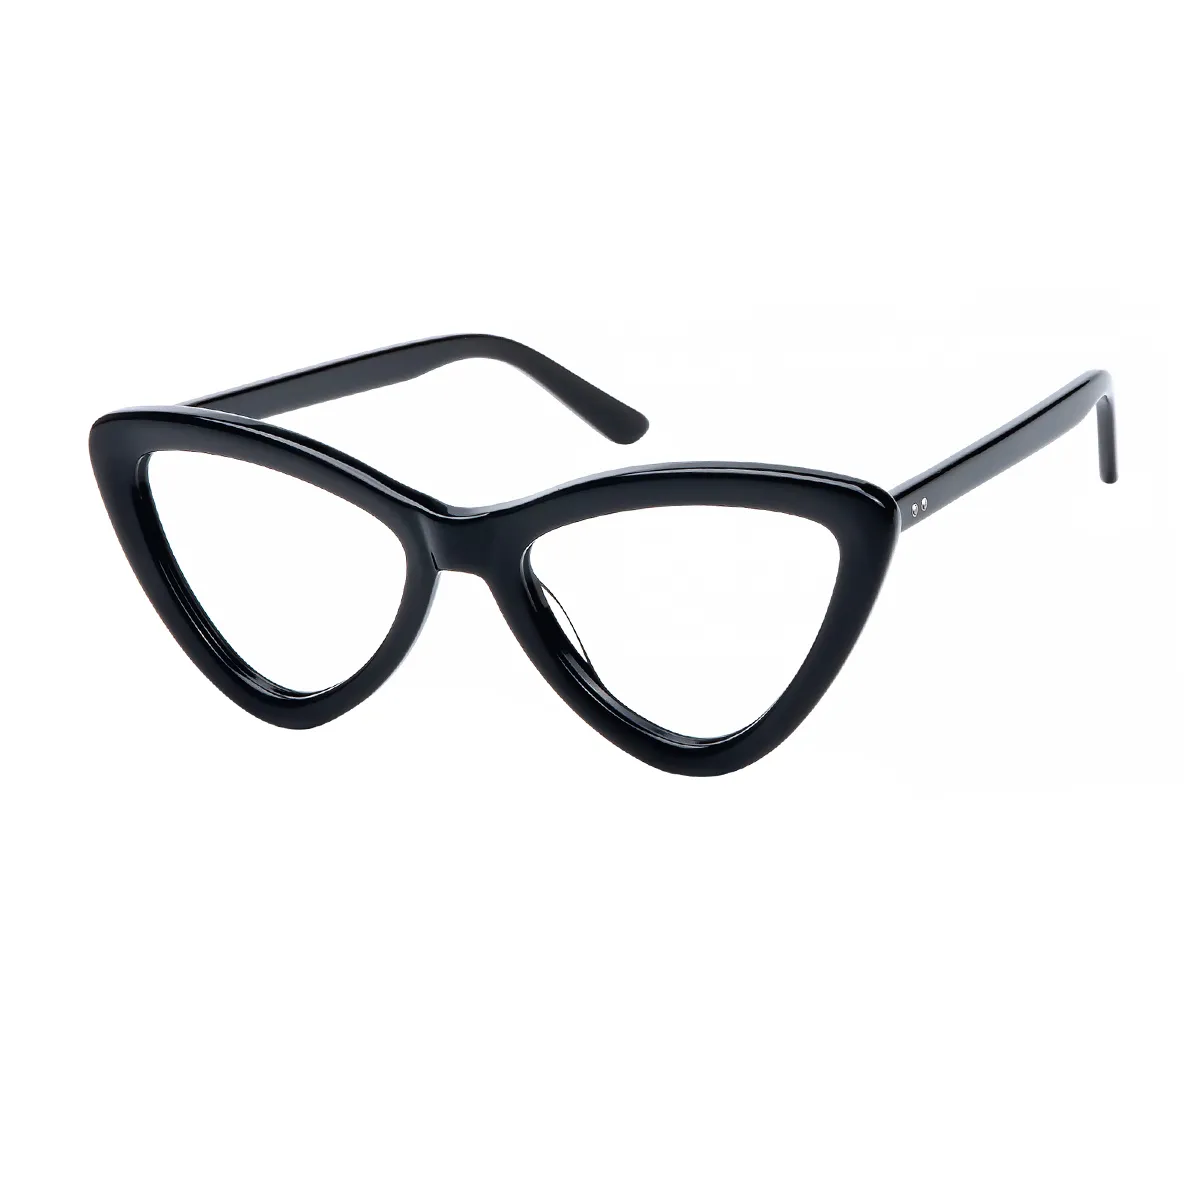 Ciou - Cat-eye Black Glasses for Women - EFE